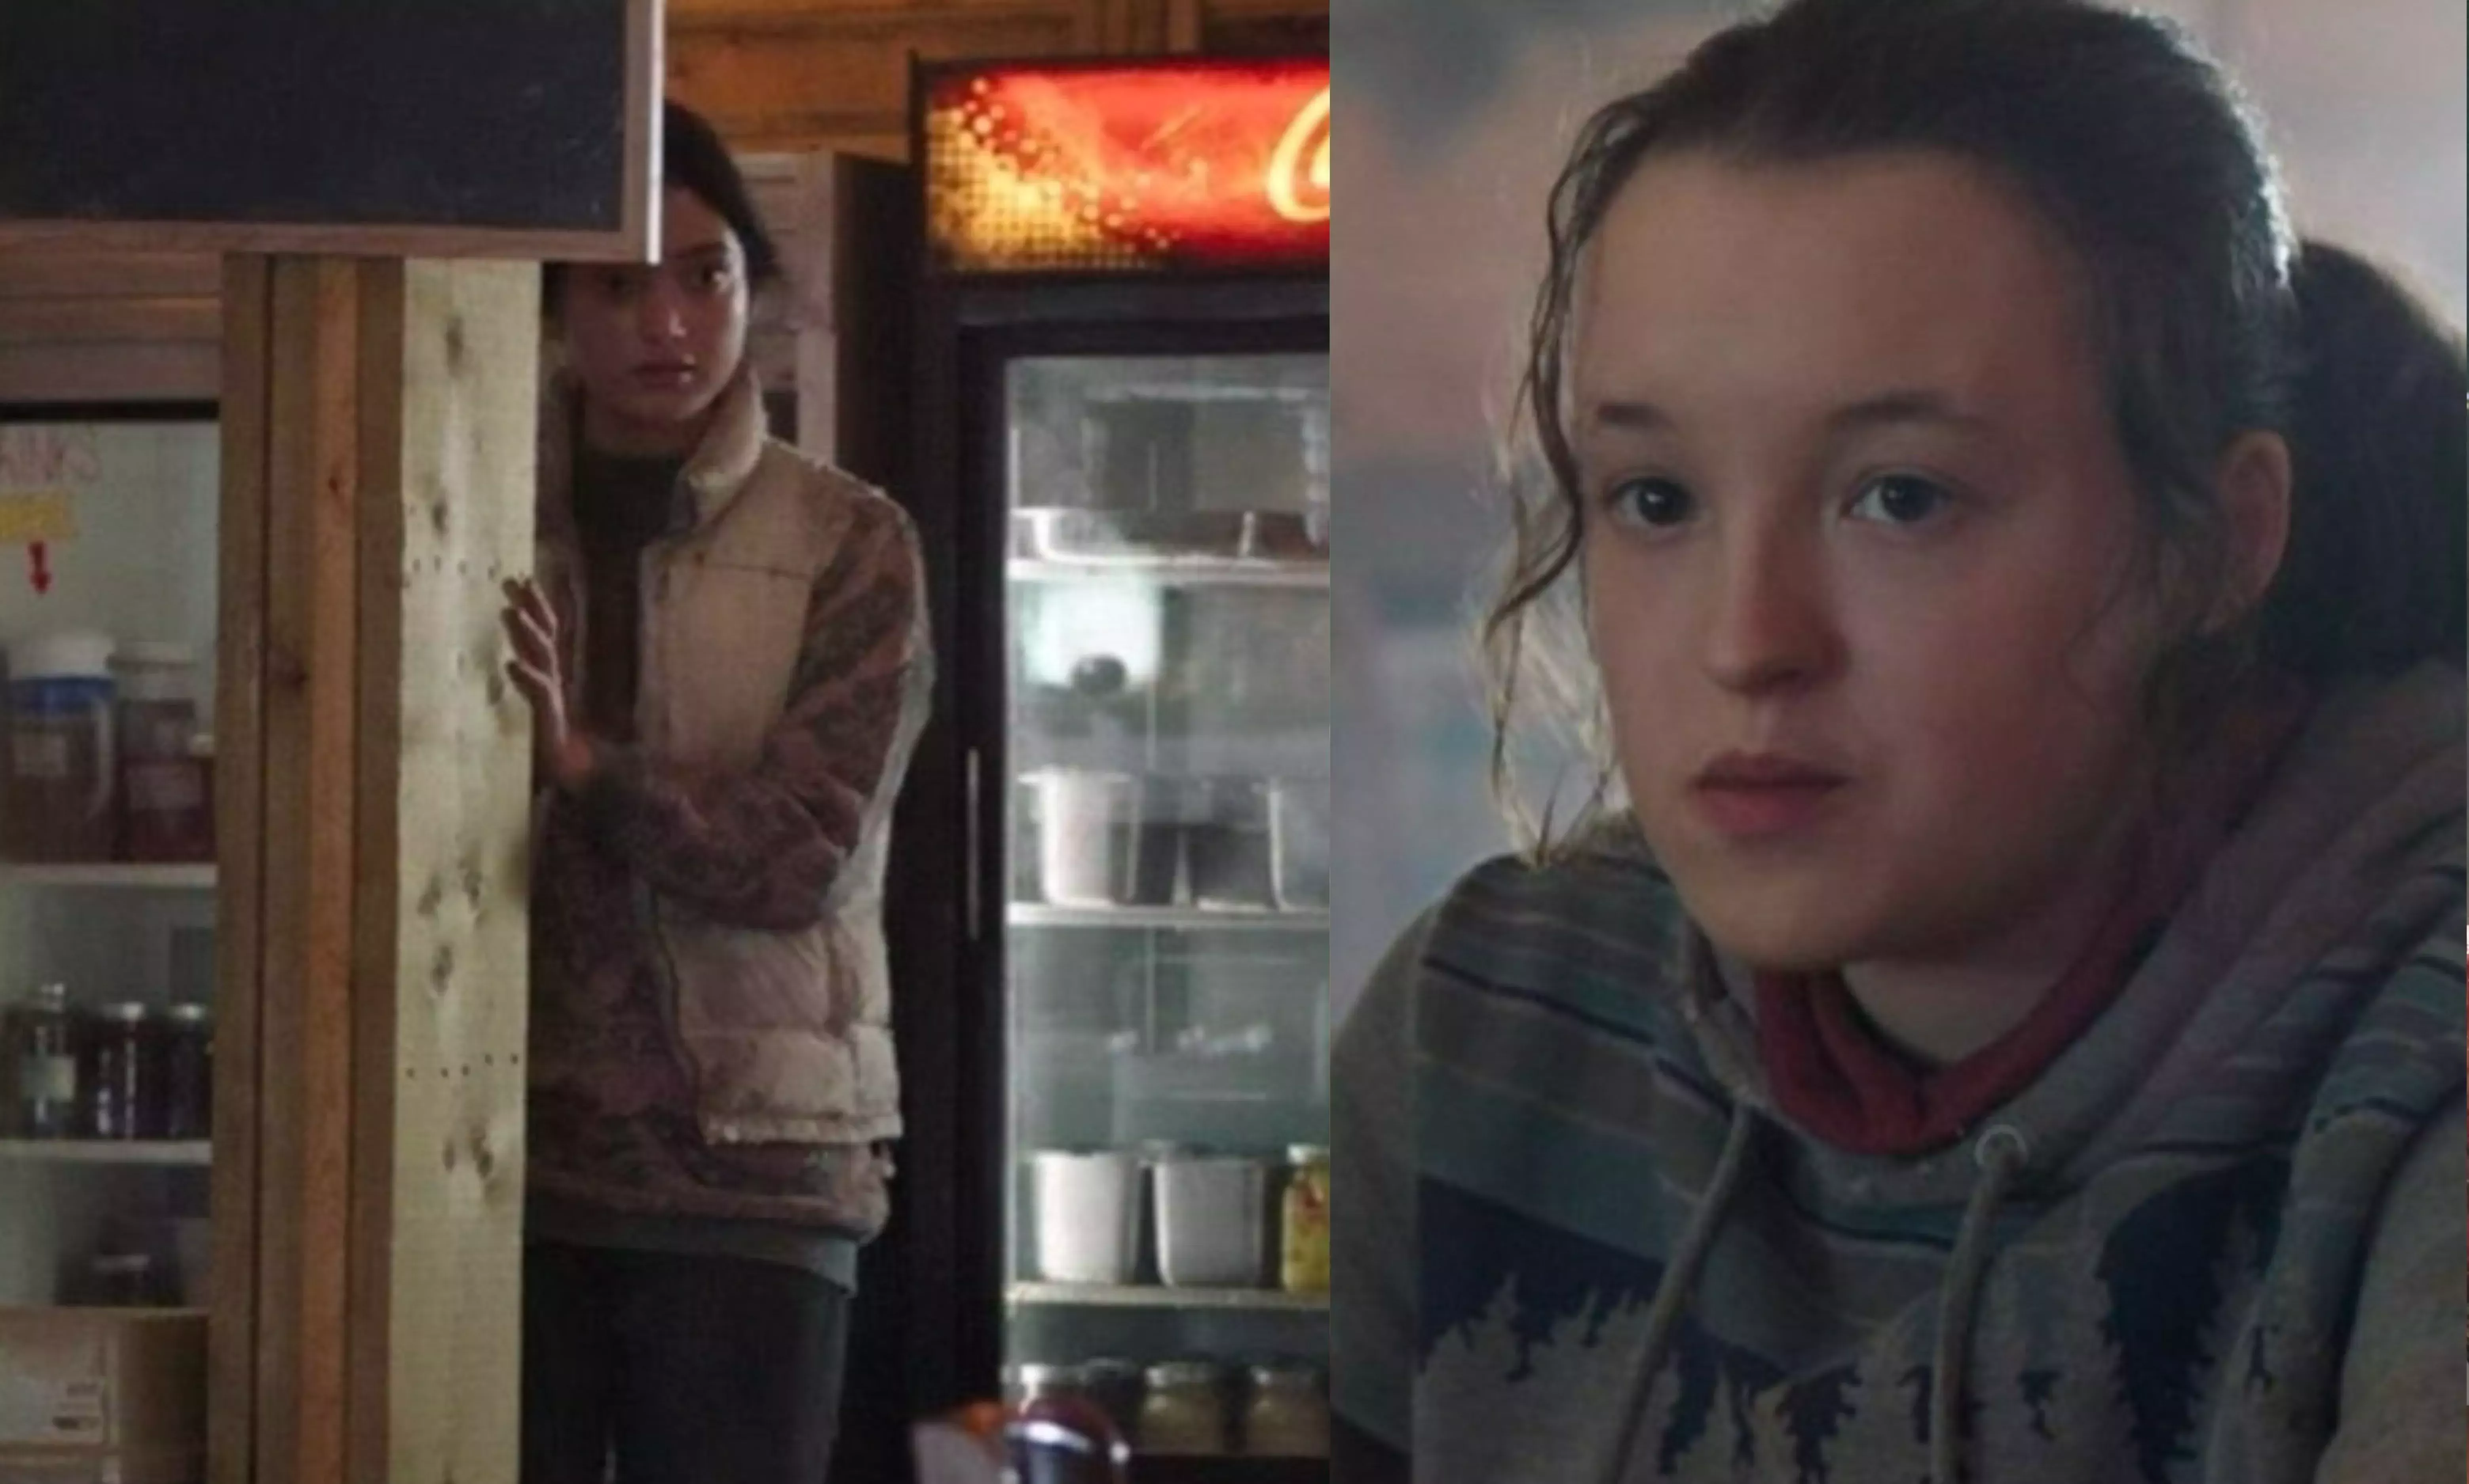 Los fans de The Last of Us están convencidos de que Dina, la novia de Ellie, acaba de aparecer en el episodio 6